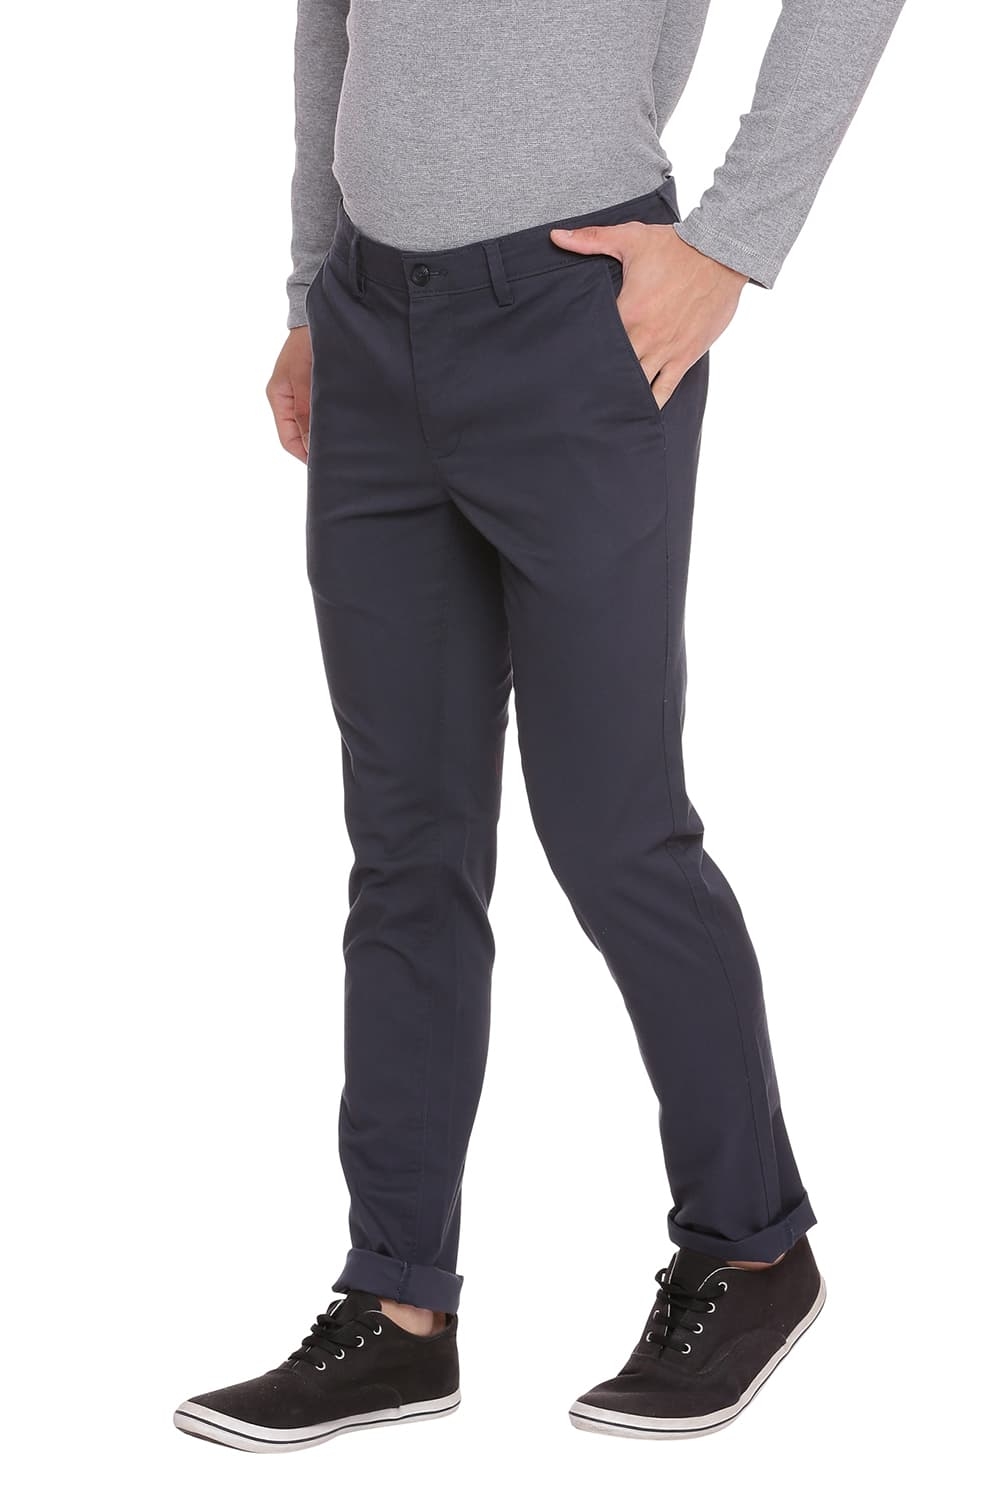 BASICS | Basics Skinny Fit Midnight Navy Stretch Trouser